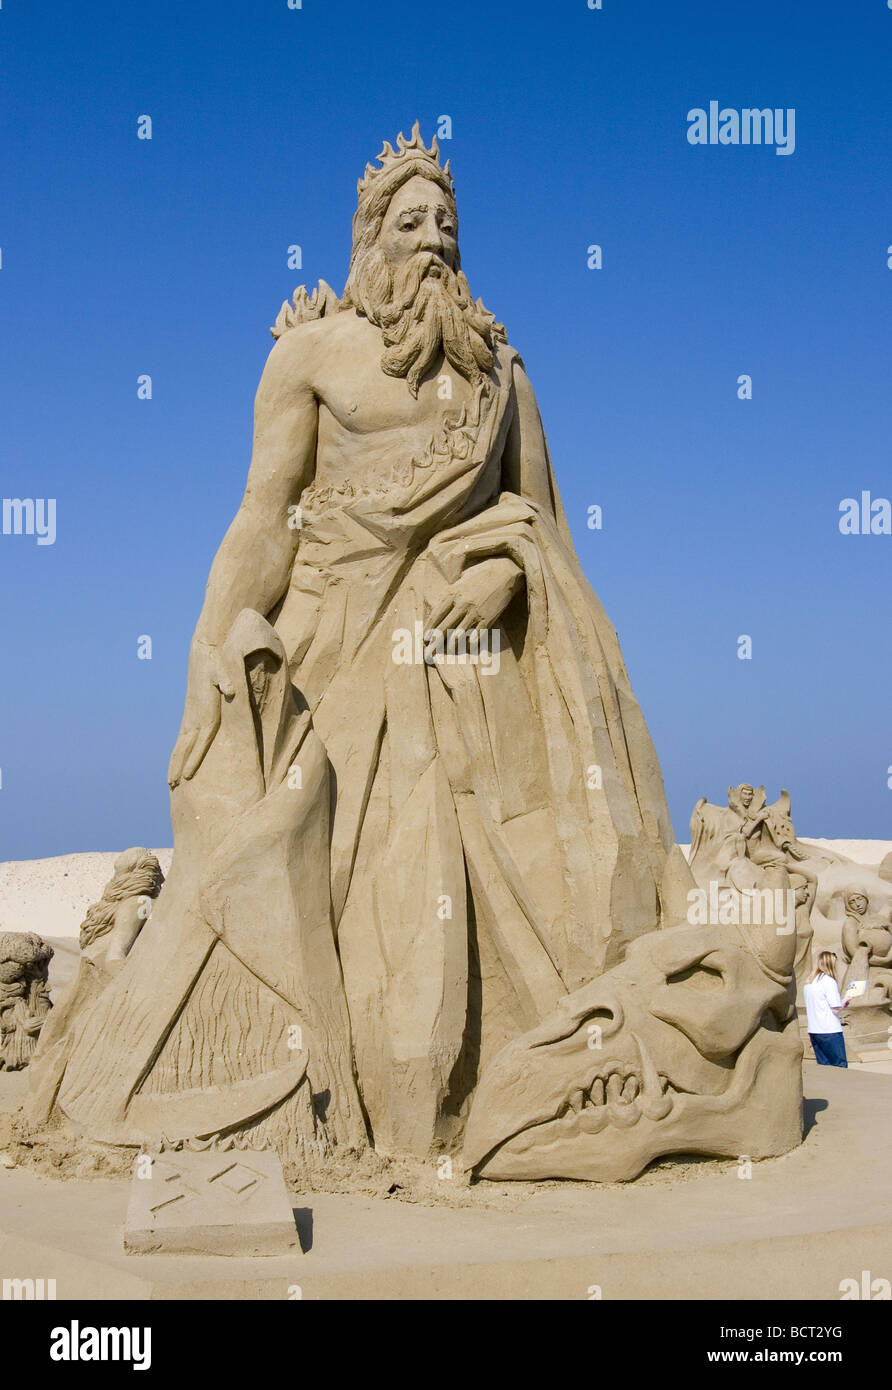 Sculpture de sable de l'Hadès, maître des enfers et seigneur de la mort dans la mythologie grecque Banque D'Images